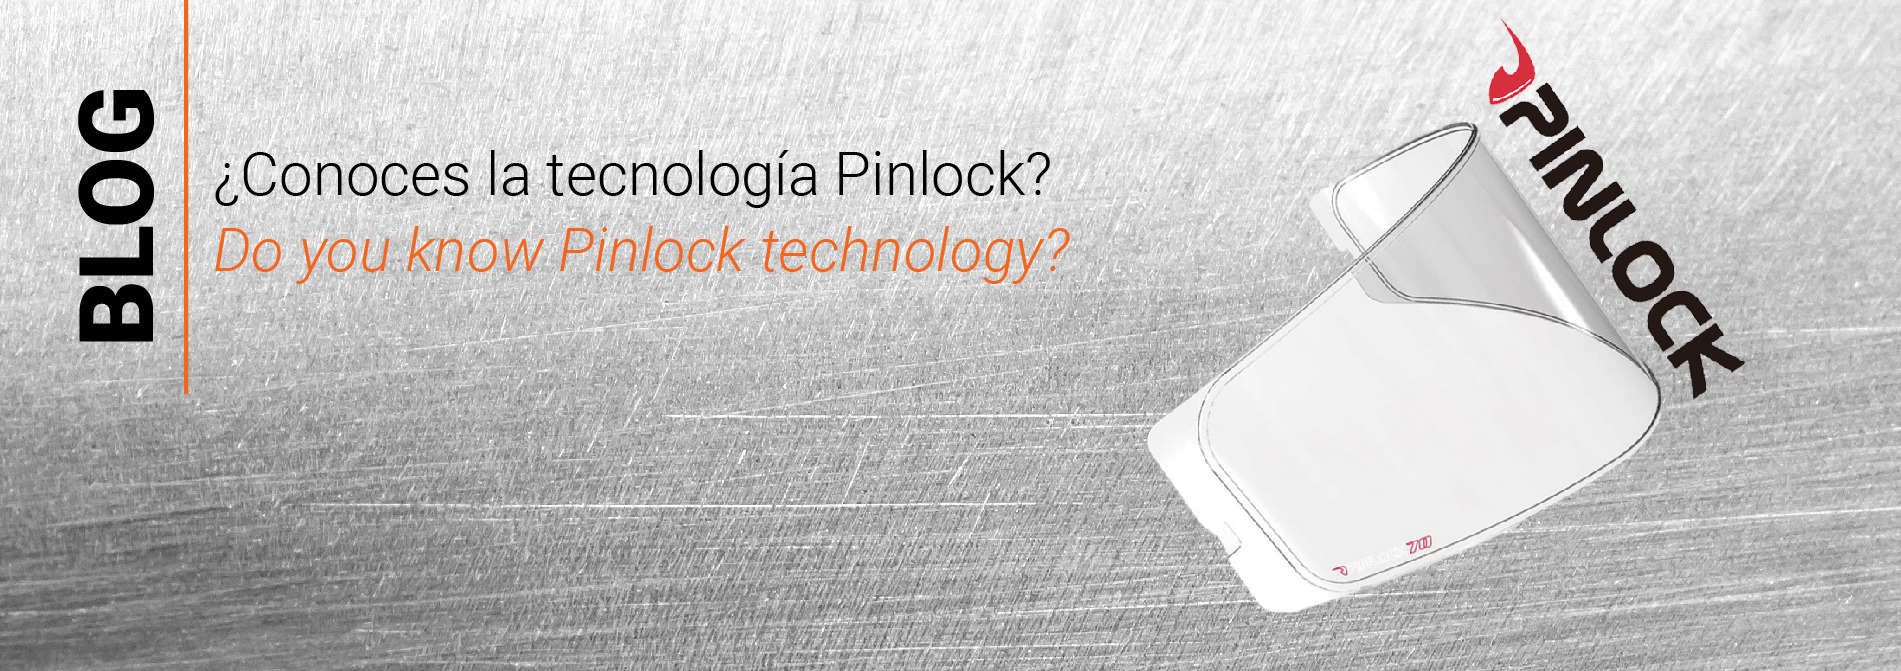 ¿Conoces la tecnologia Pinlock?